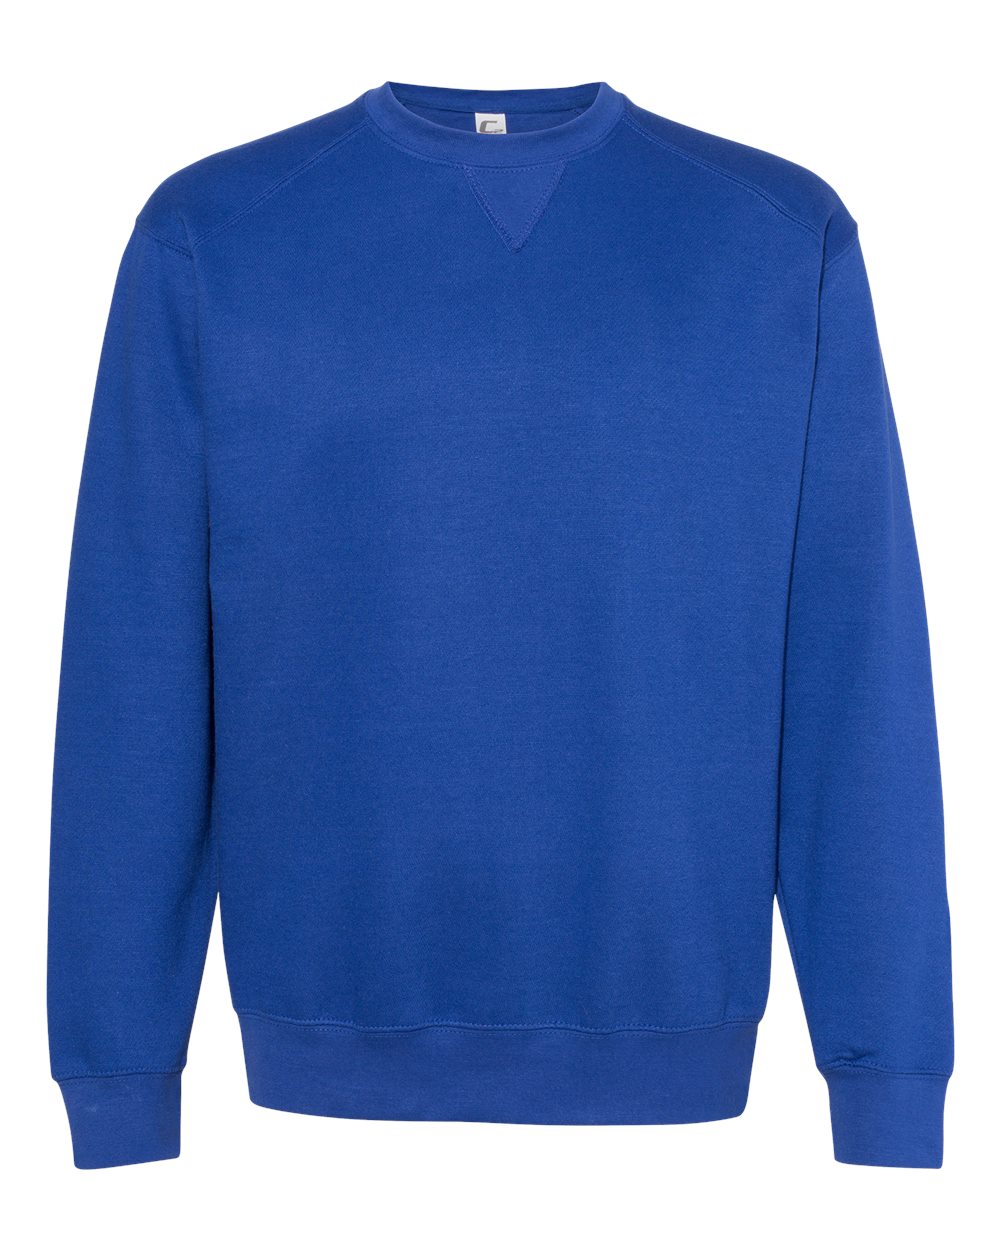 Unisex Comfort-Flex 8oz Fleece Sweatshirt